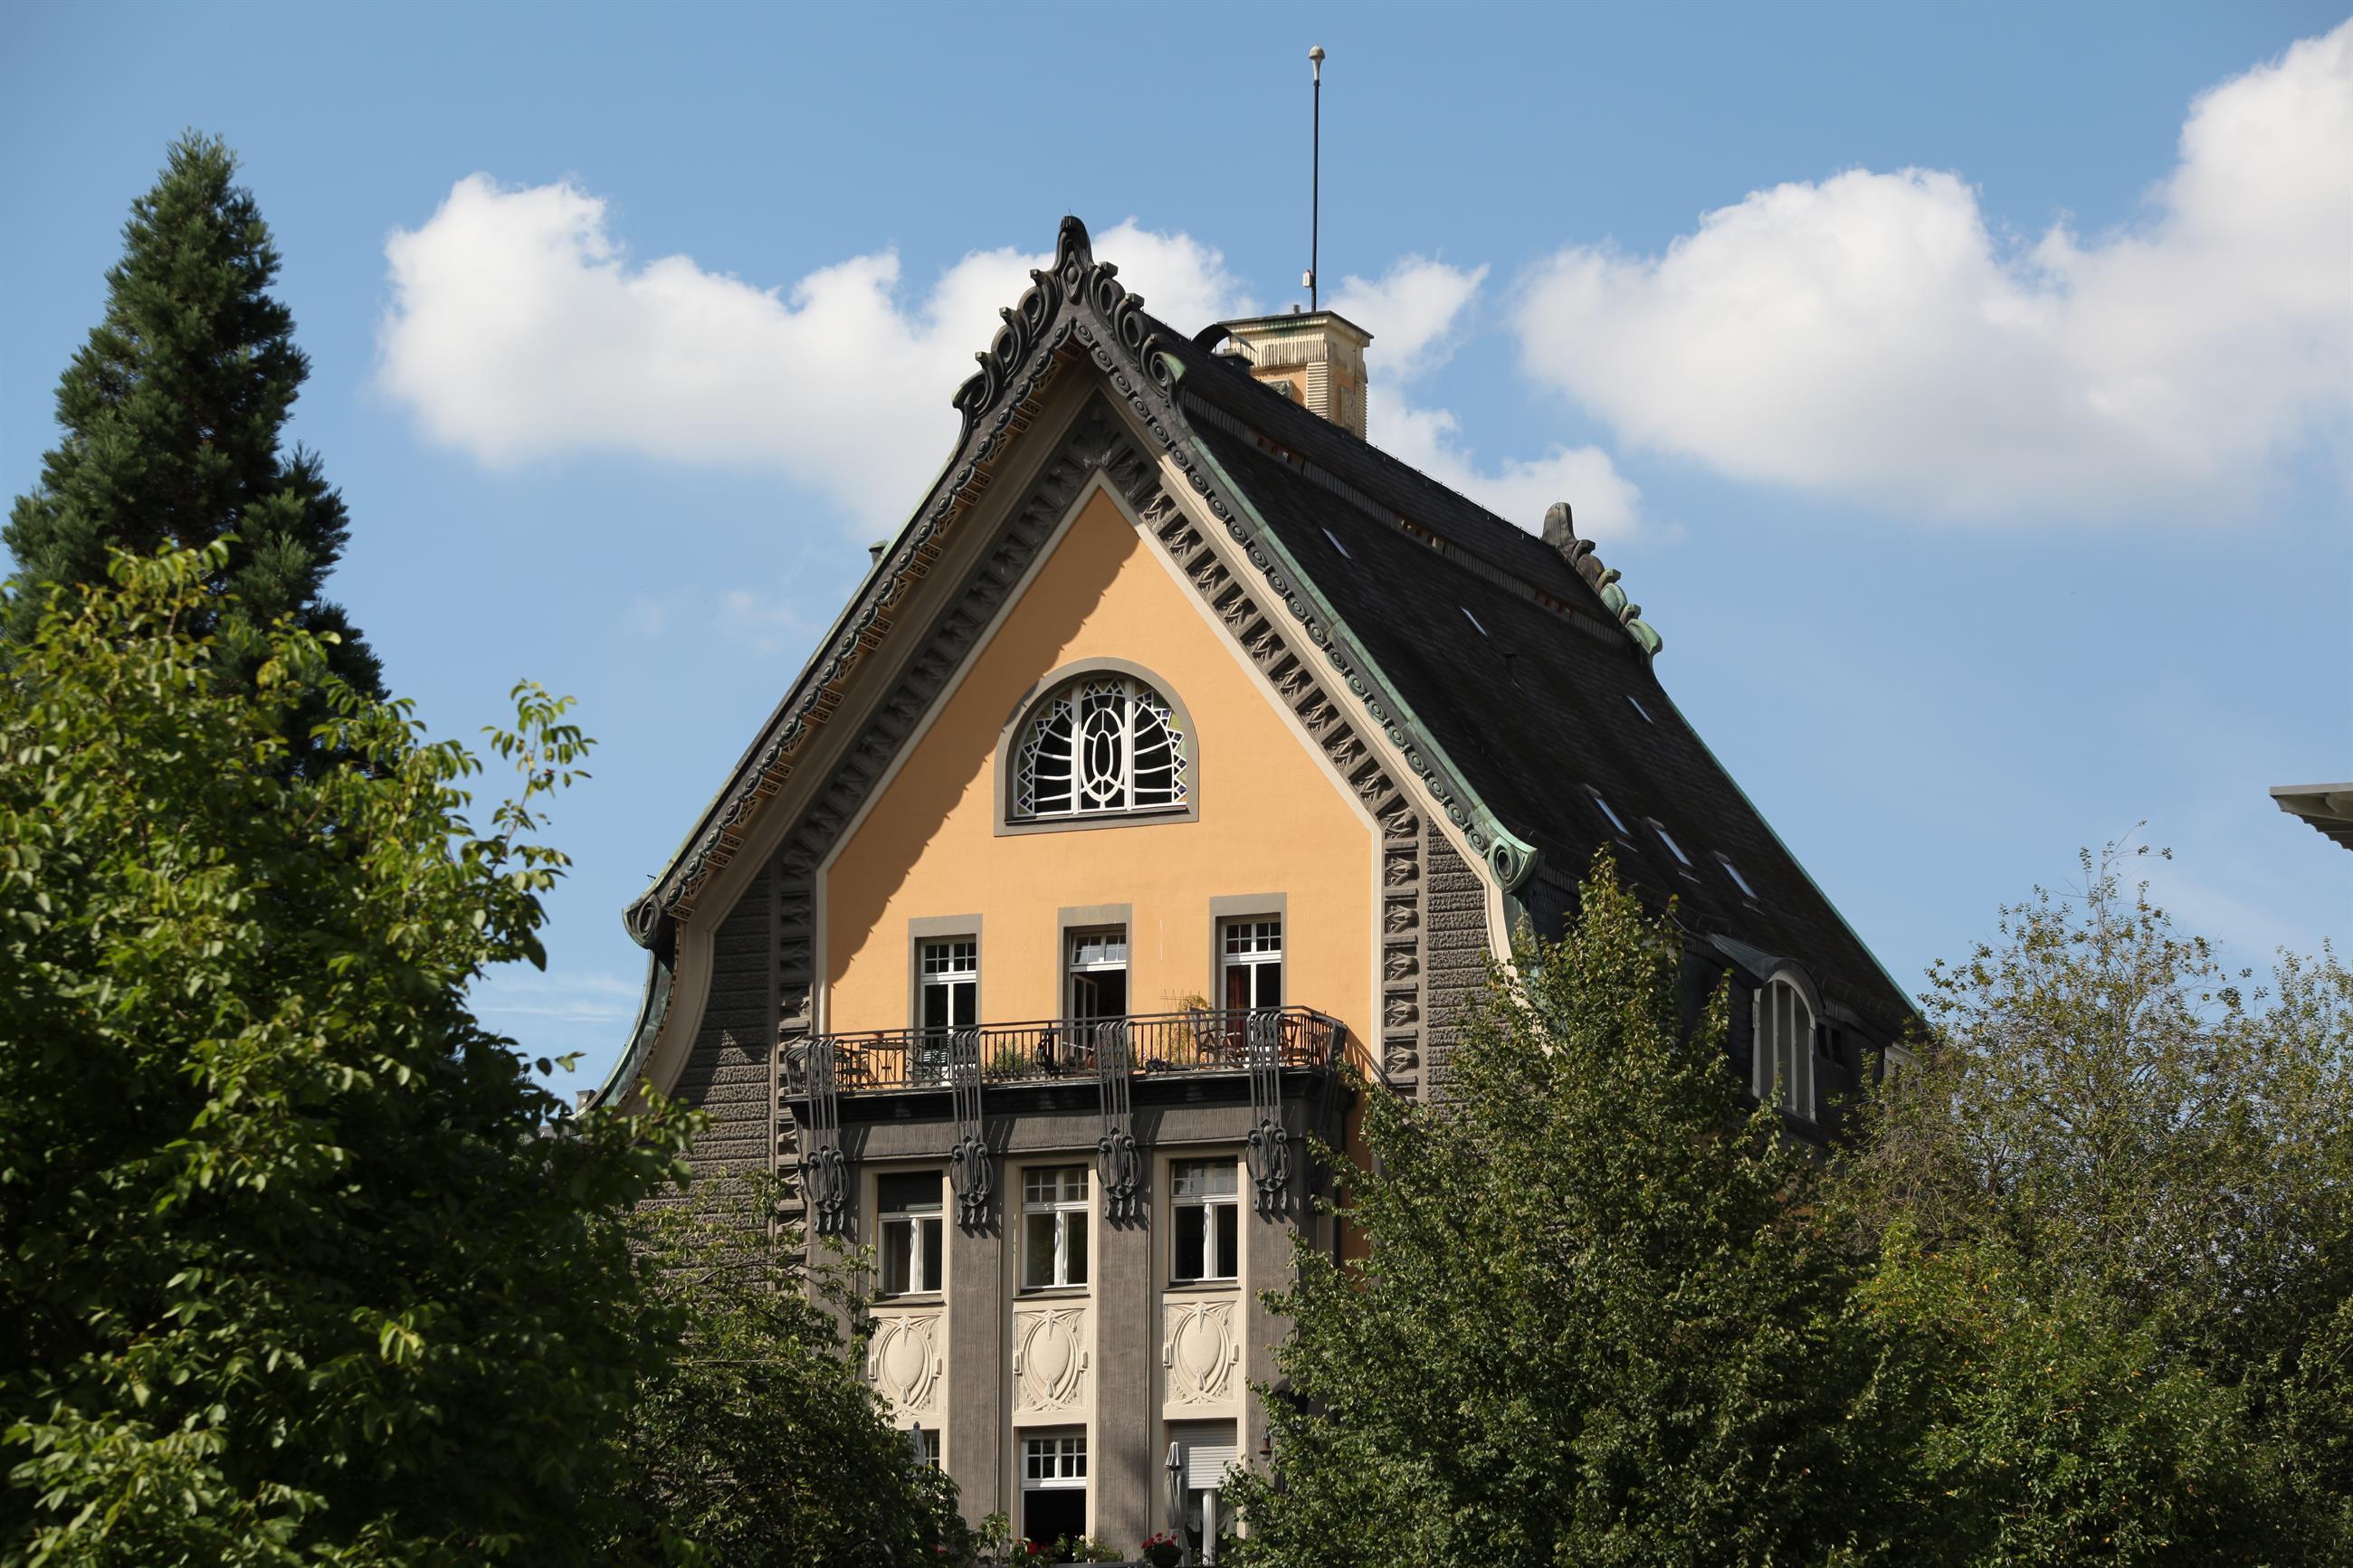 Villa Huesgen